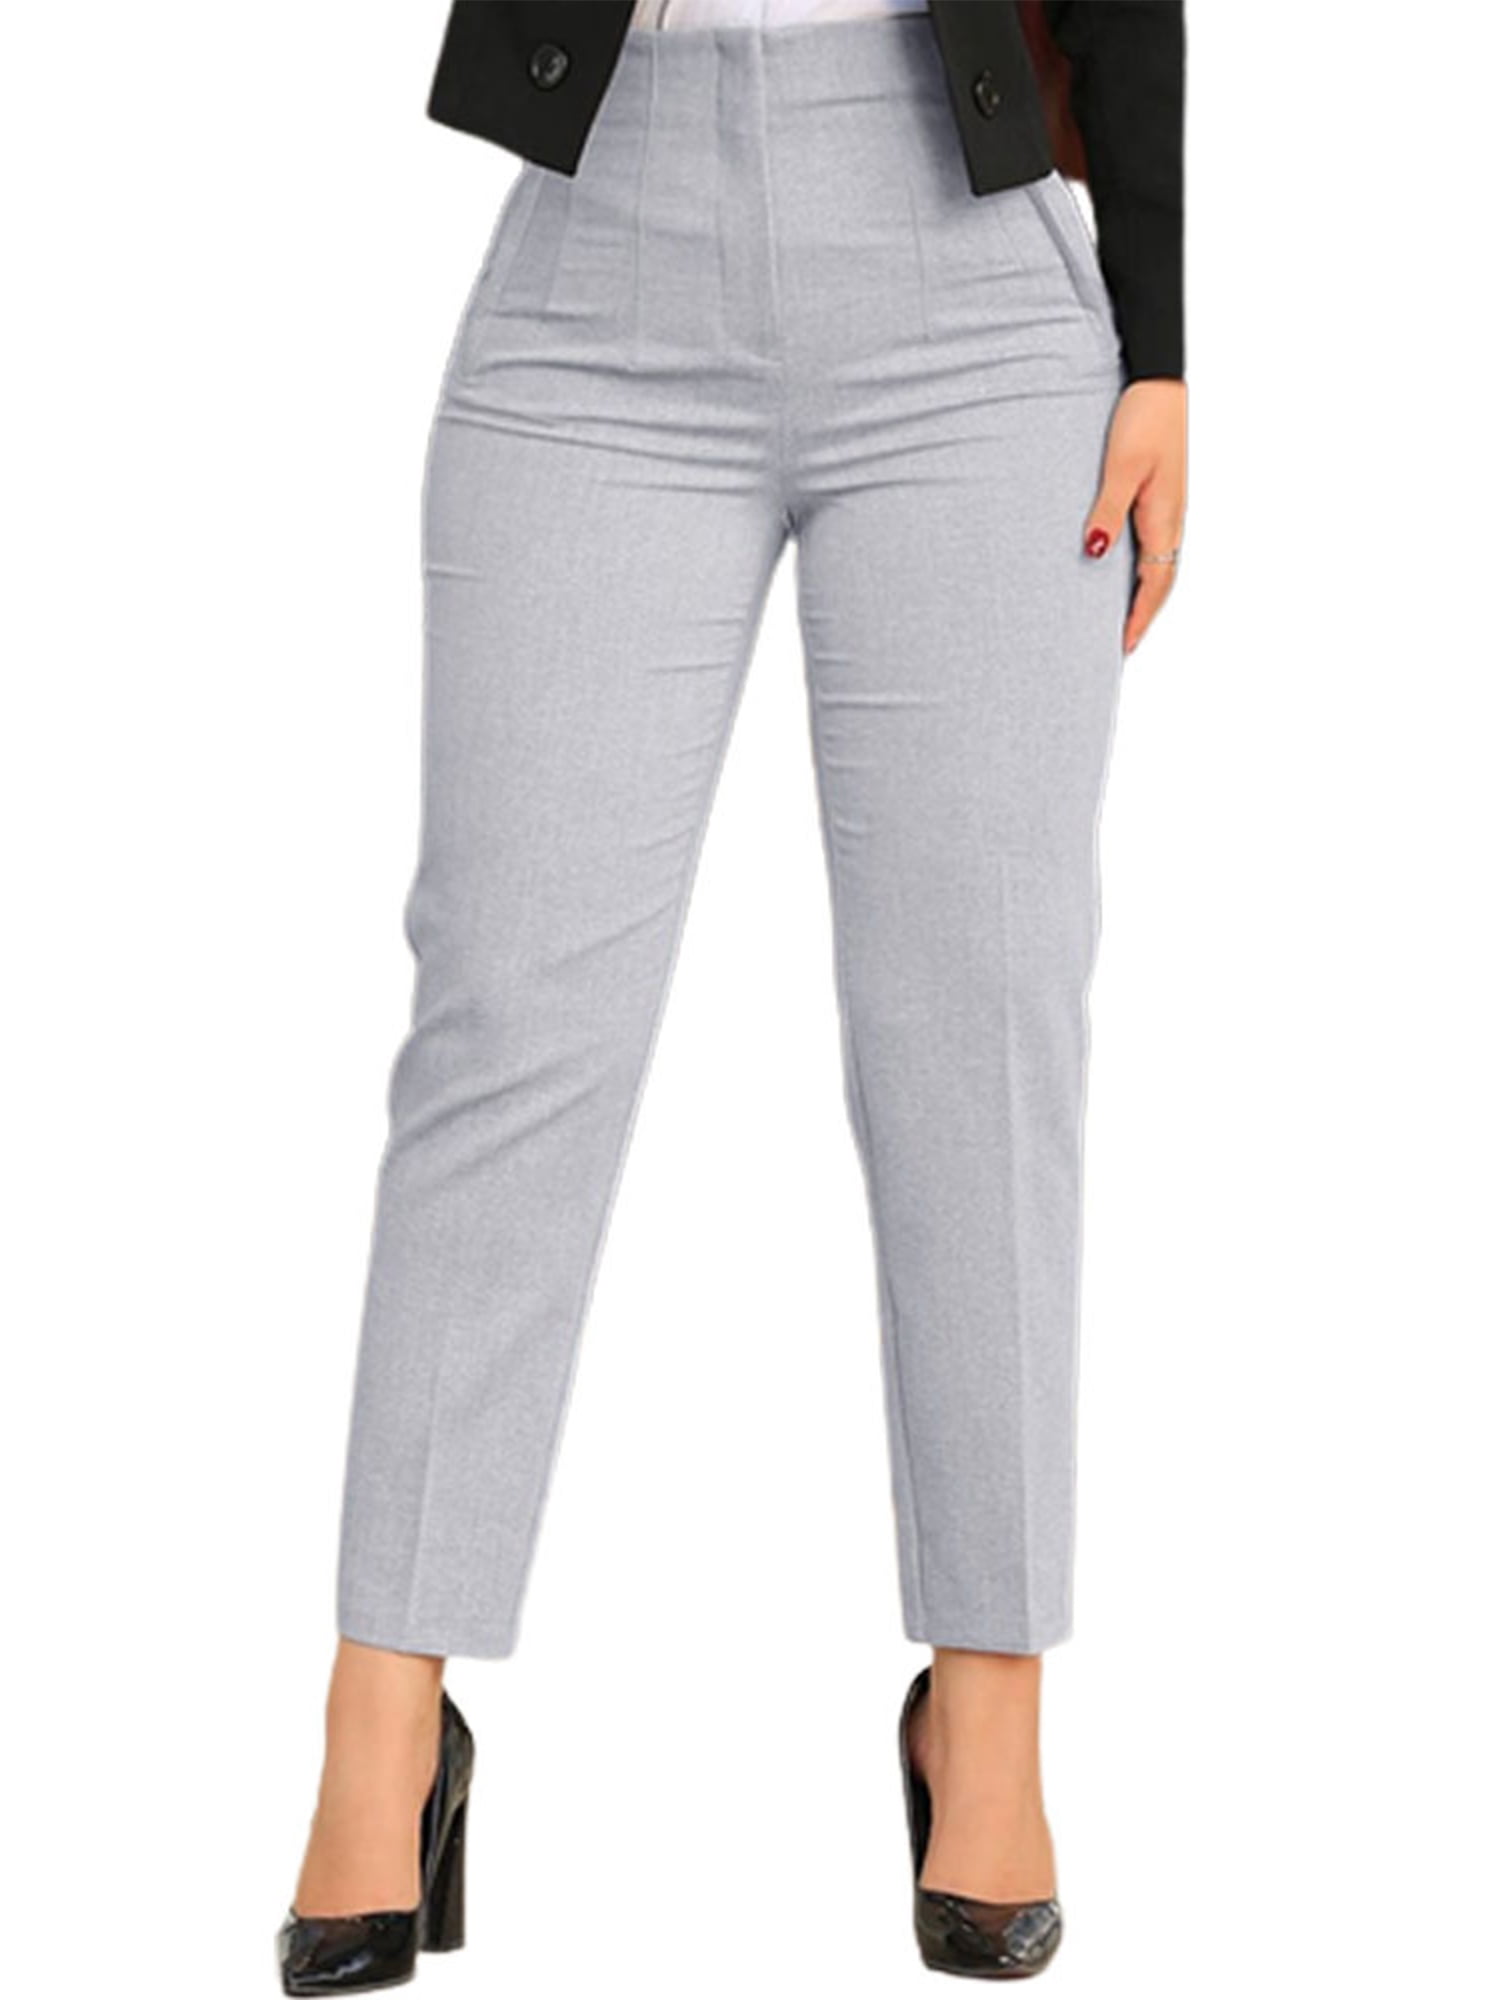 Black Gray Suit Pants Woman High Waist Pants Office Ladie Ashion